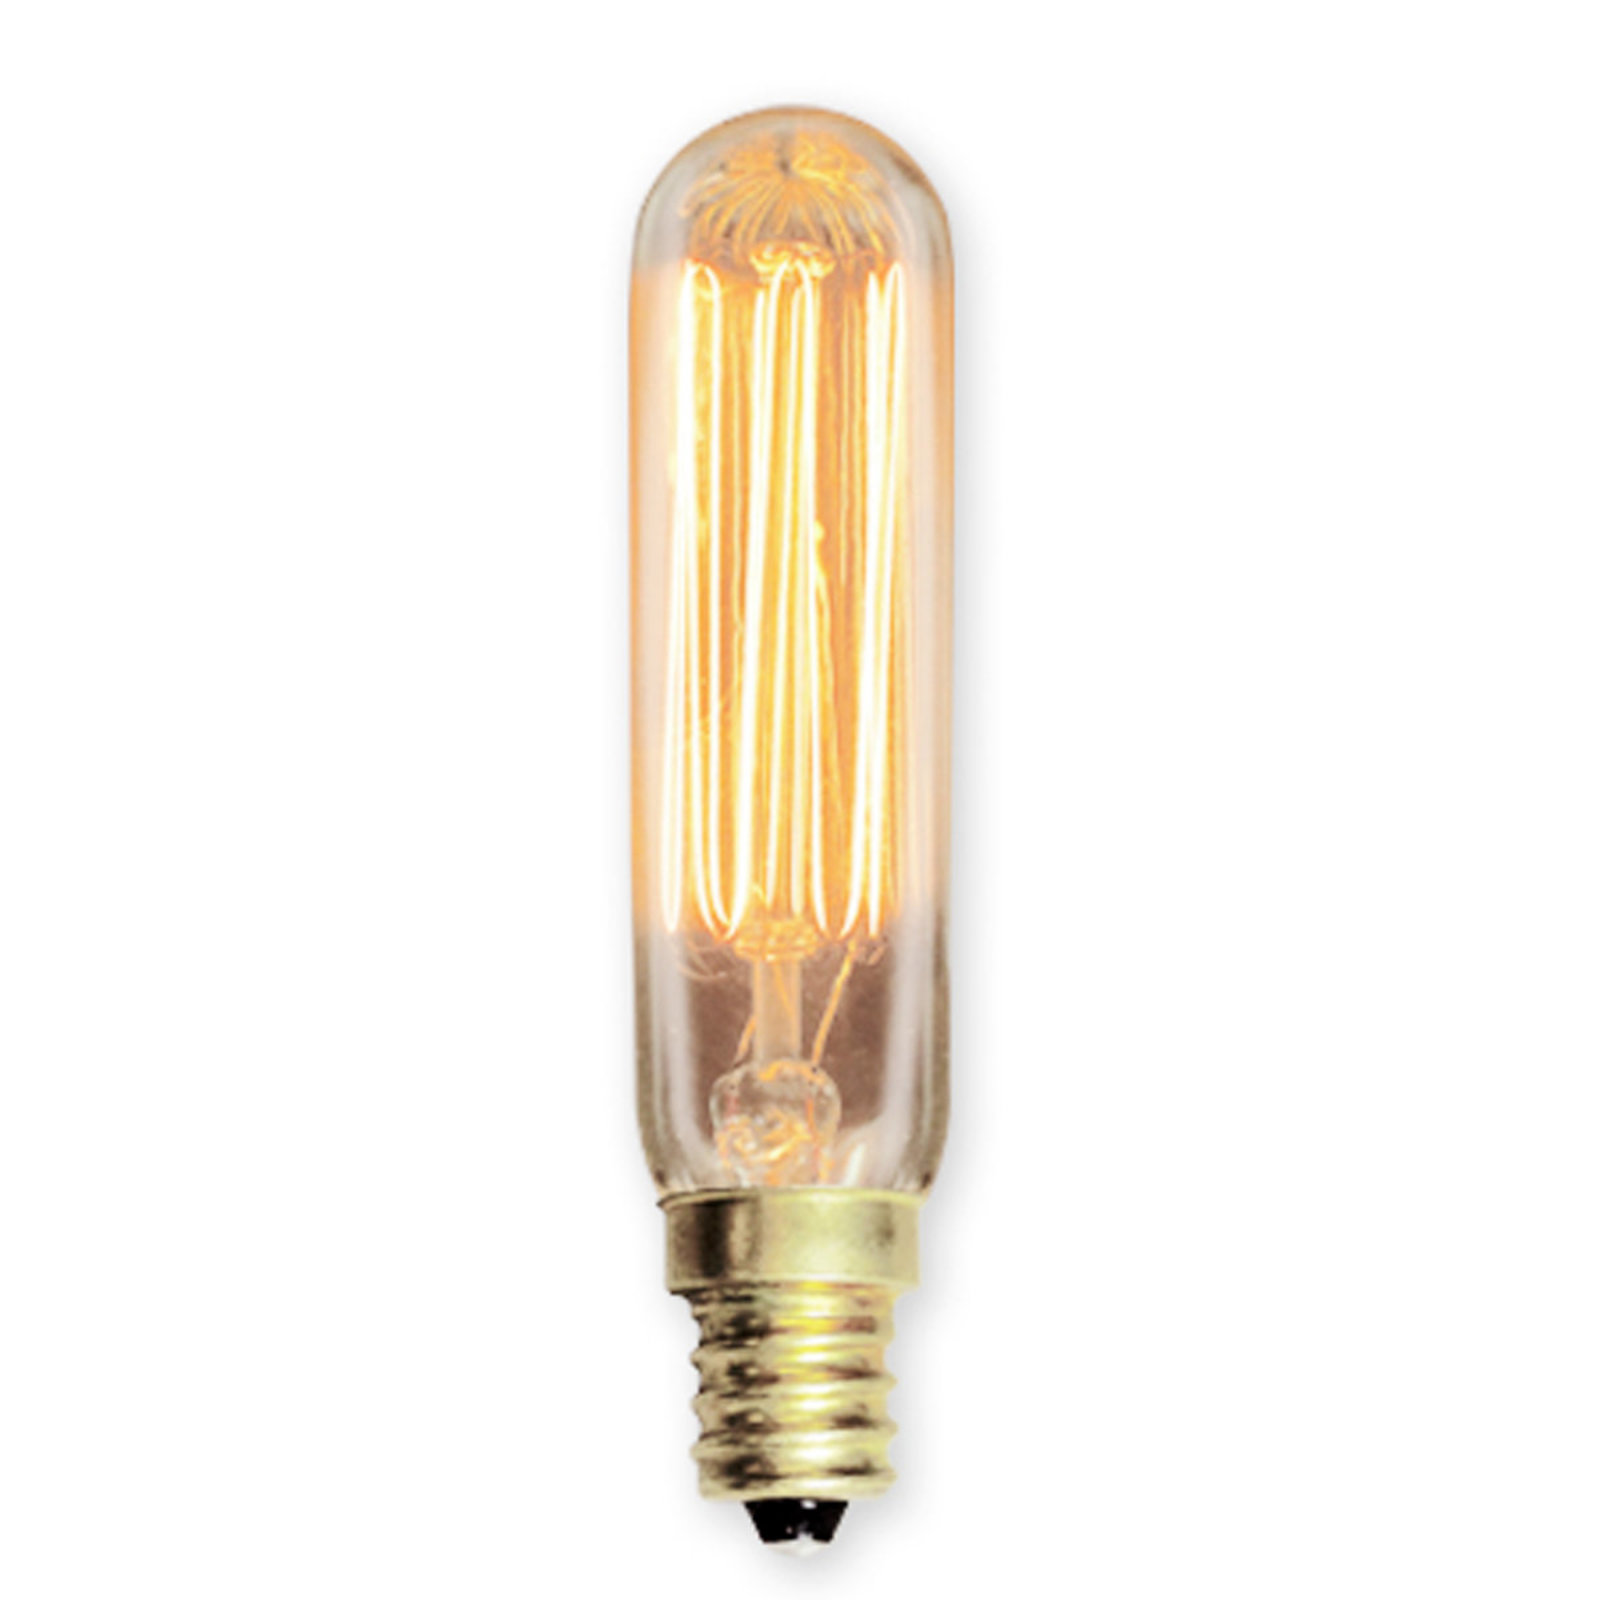 Vintage Edison Light Bulbs - Shades of Light